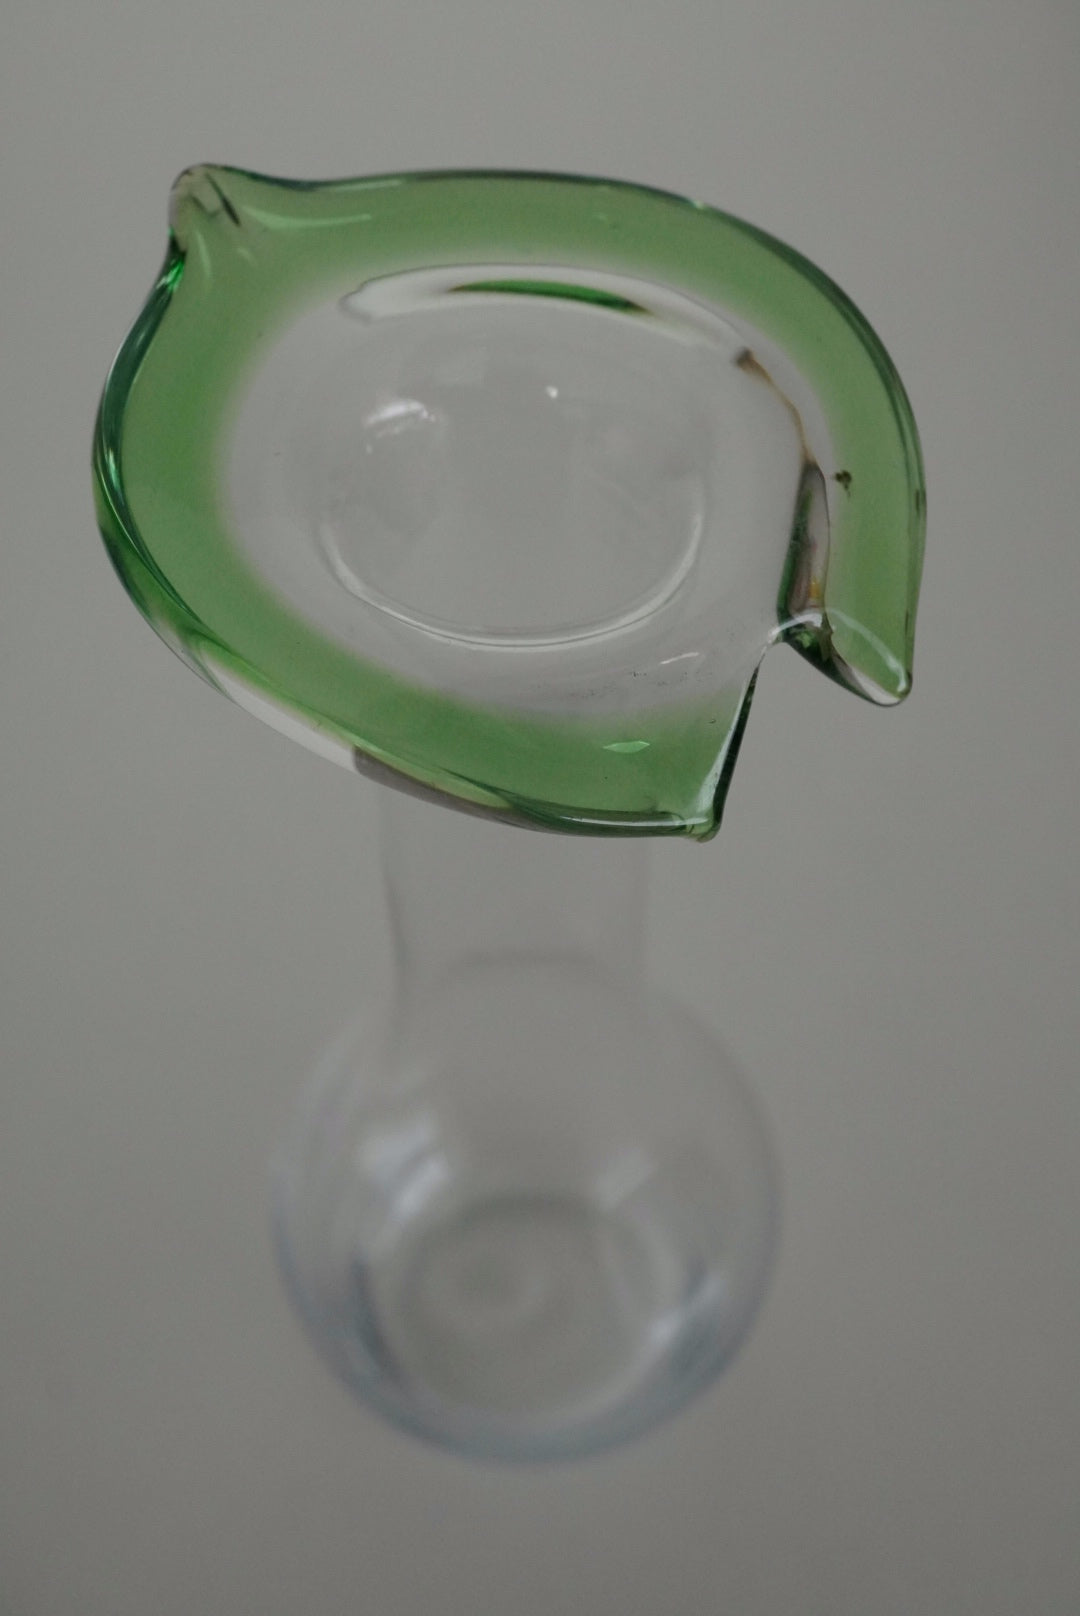 Leaf Glass Vase